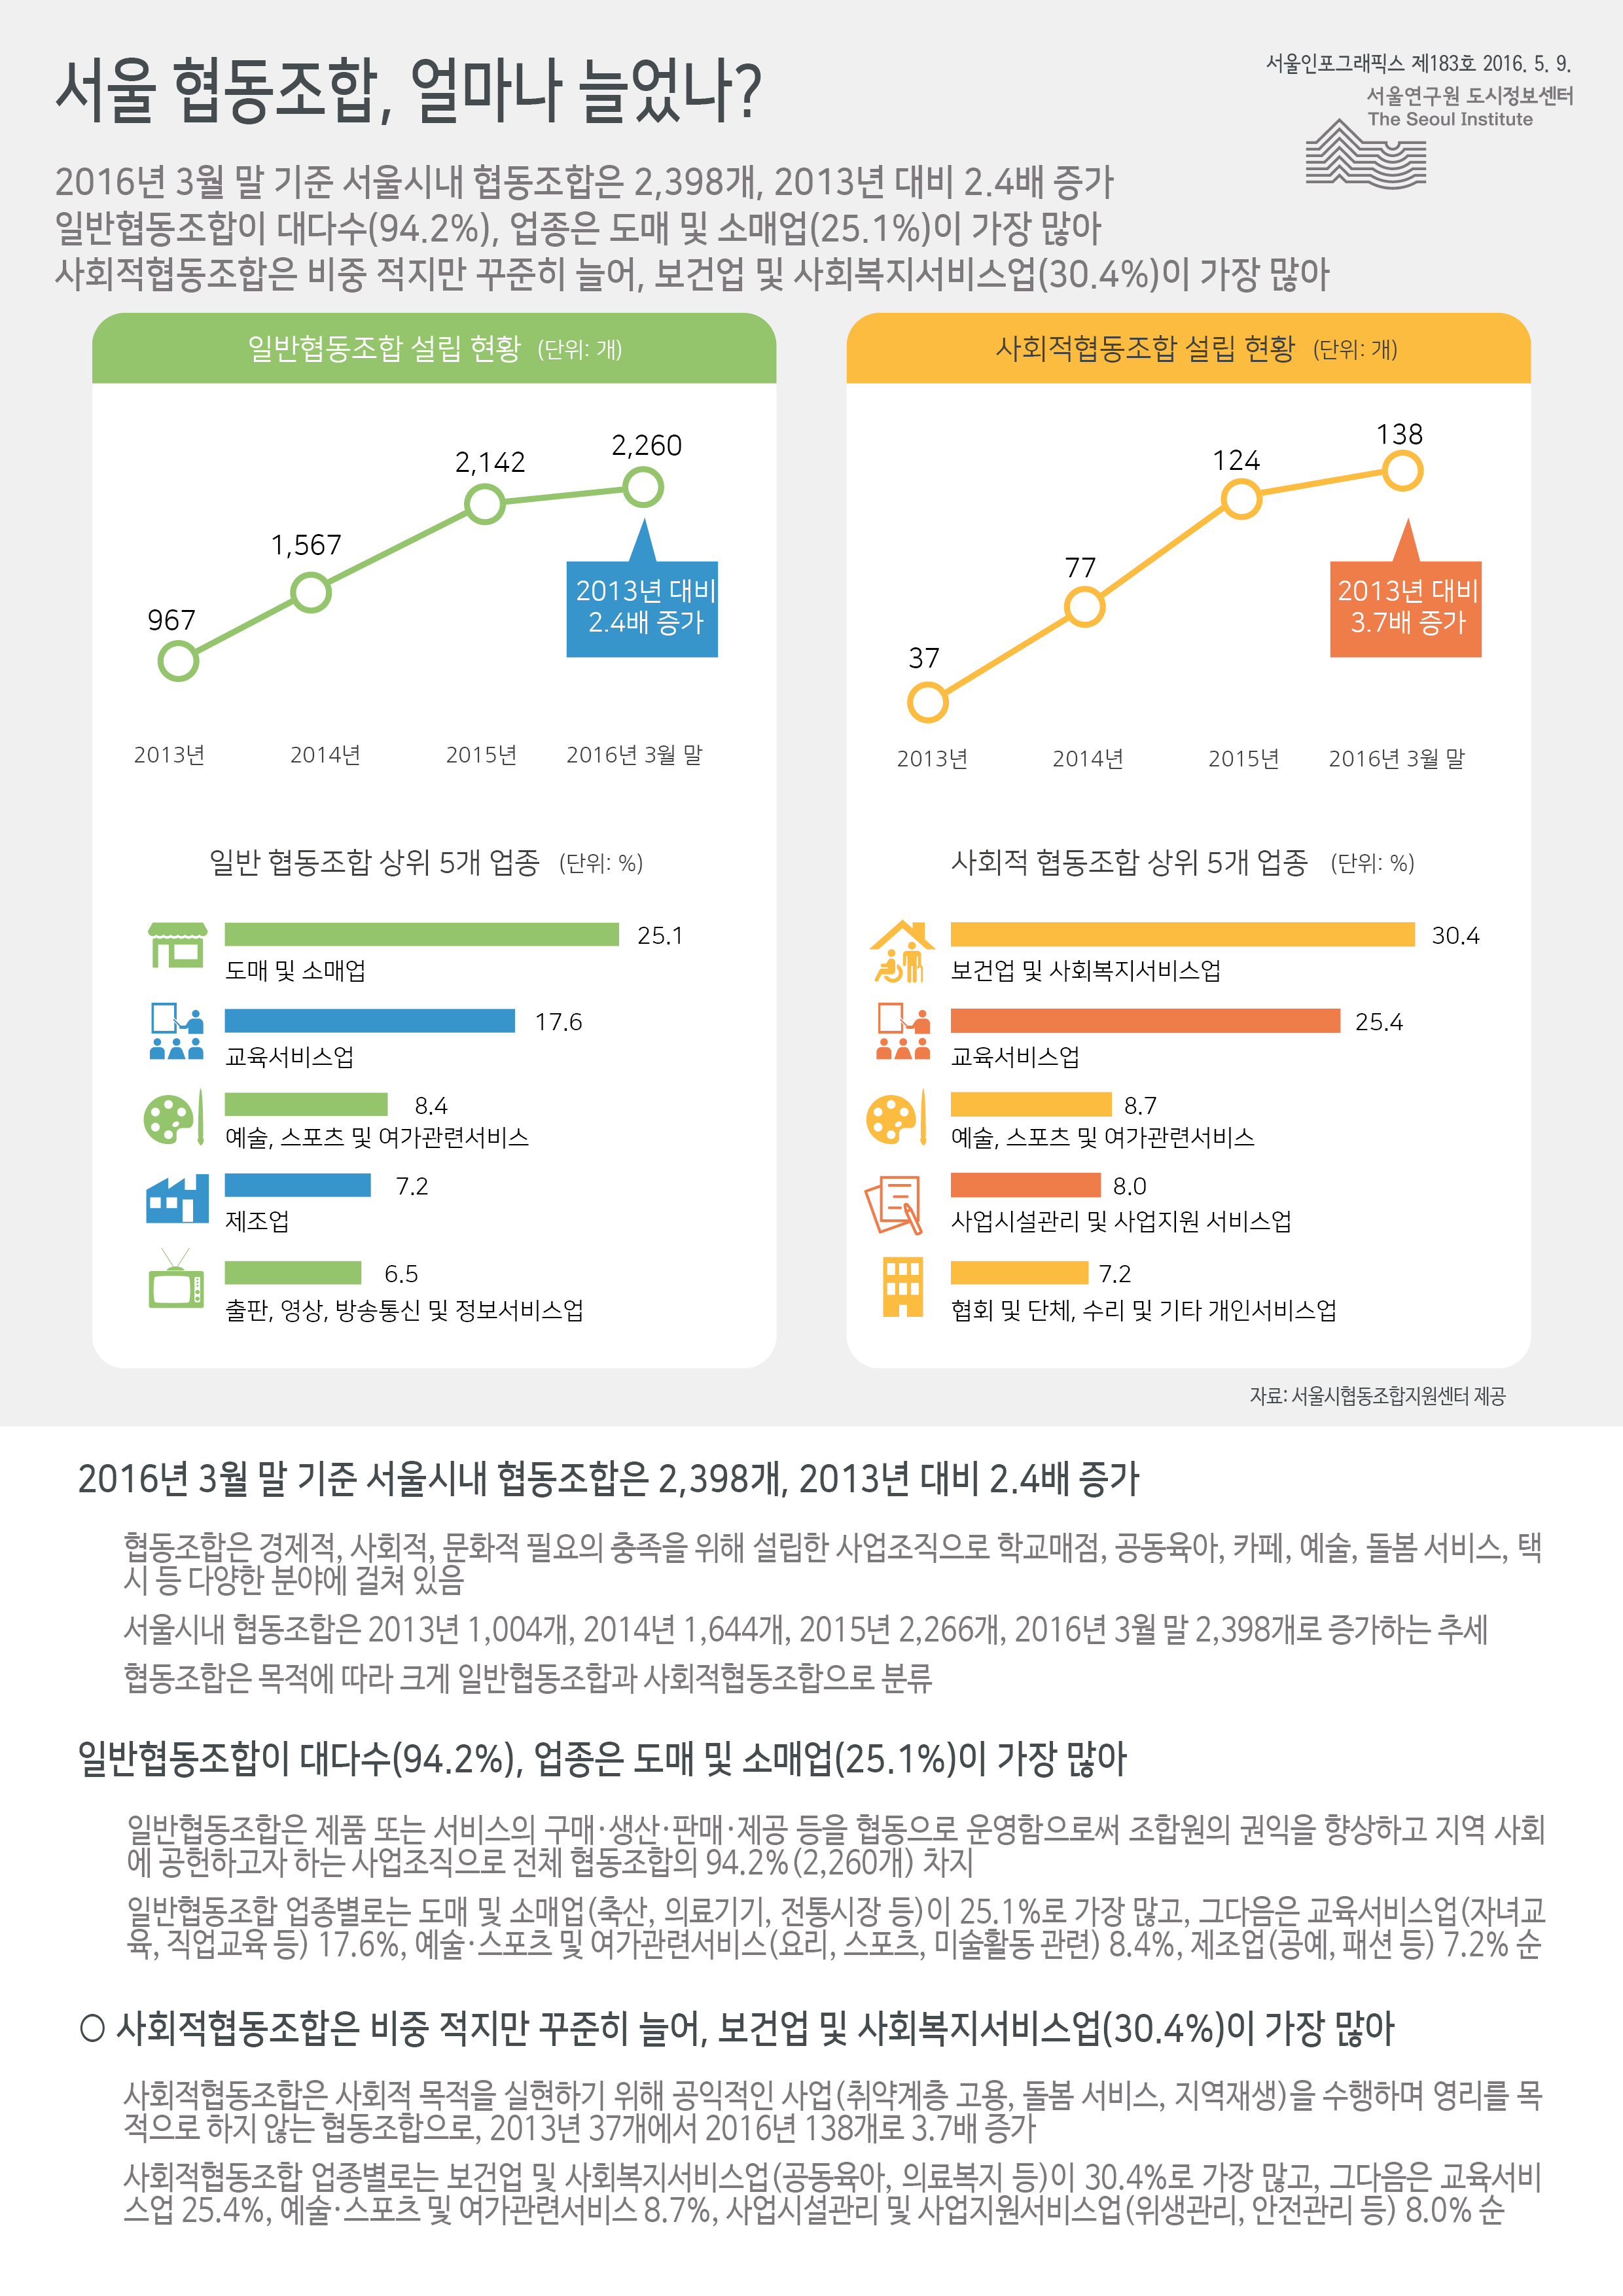 서울 협동조합, 얼마나 늘었나? 서울인포그래픽스 제183호 2016년 5월 9일 2016년 3월 말 기준 서울시내 협동조합은 2,398개, 2013년 대비 2.4배 증가함. 일반협동조합이 94.2%로 대다수, 업종은 도매 및 소매업이 25.1%로 가장 많음. 사회적협동조합은 비중 적지만 꾸준히 늘어, 보건업 및 사회복지서비스업이 30.4%로 가장 많음으로 정리 될 수 있습니다. 인포그래픽으로 제공되는 그래픽은 하단에 표로 자세히 제공됩니다.